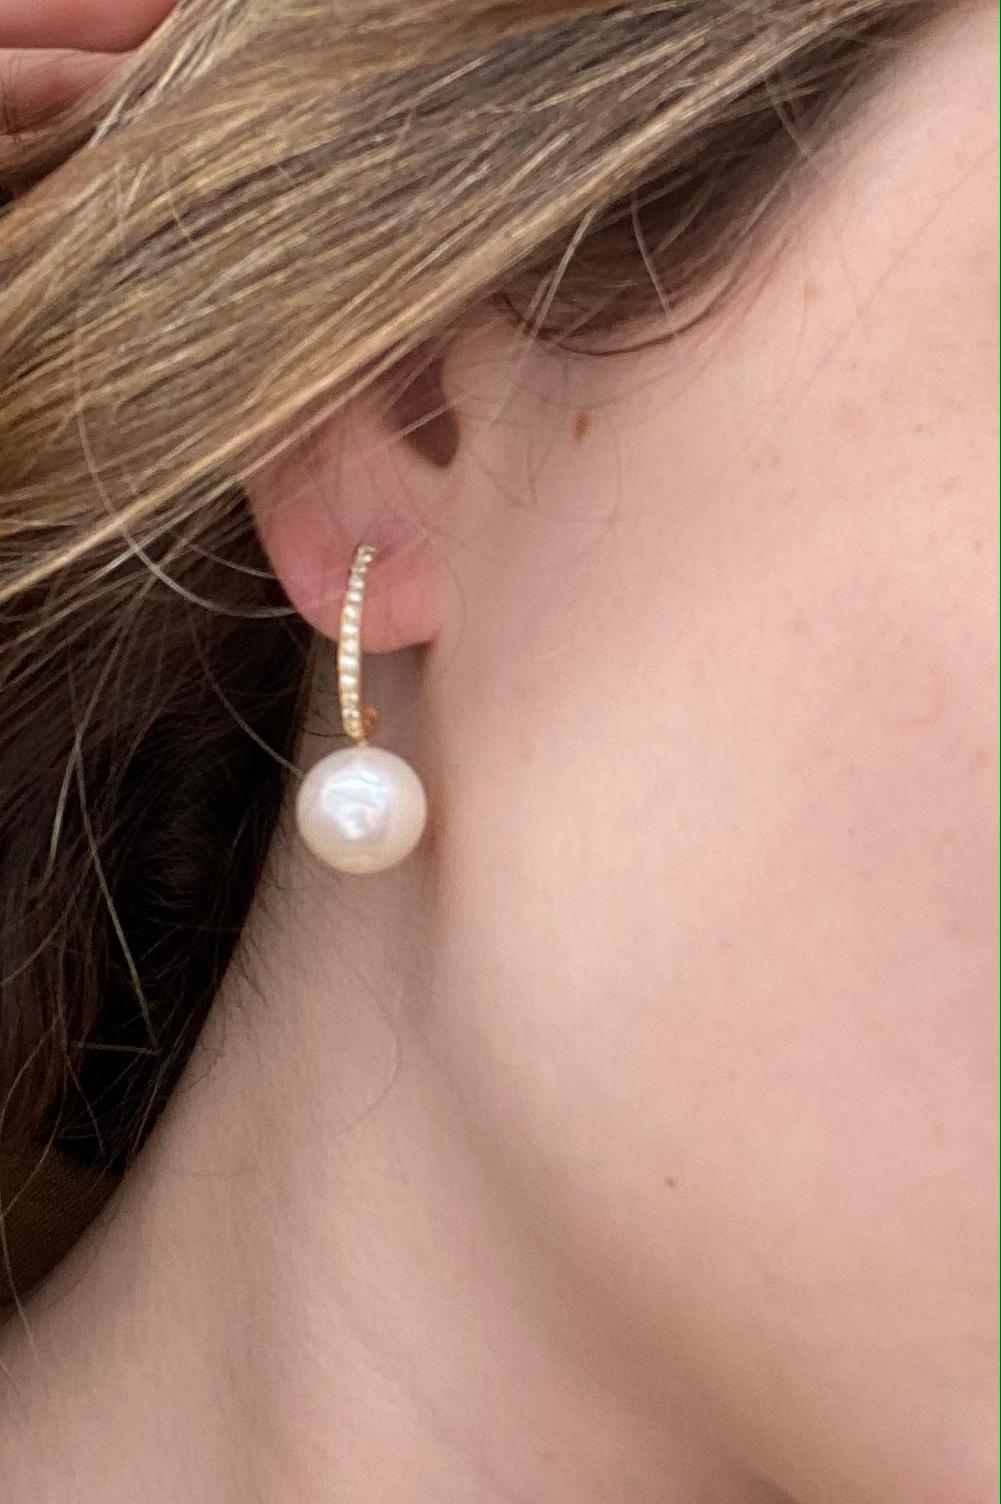 pearl earring design ideas